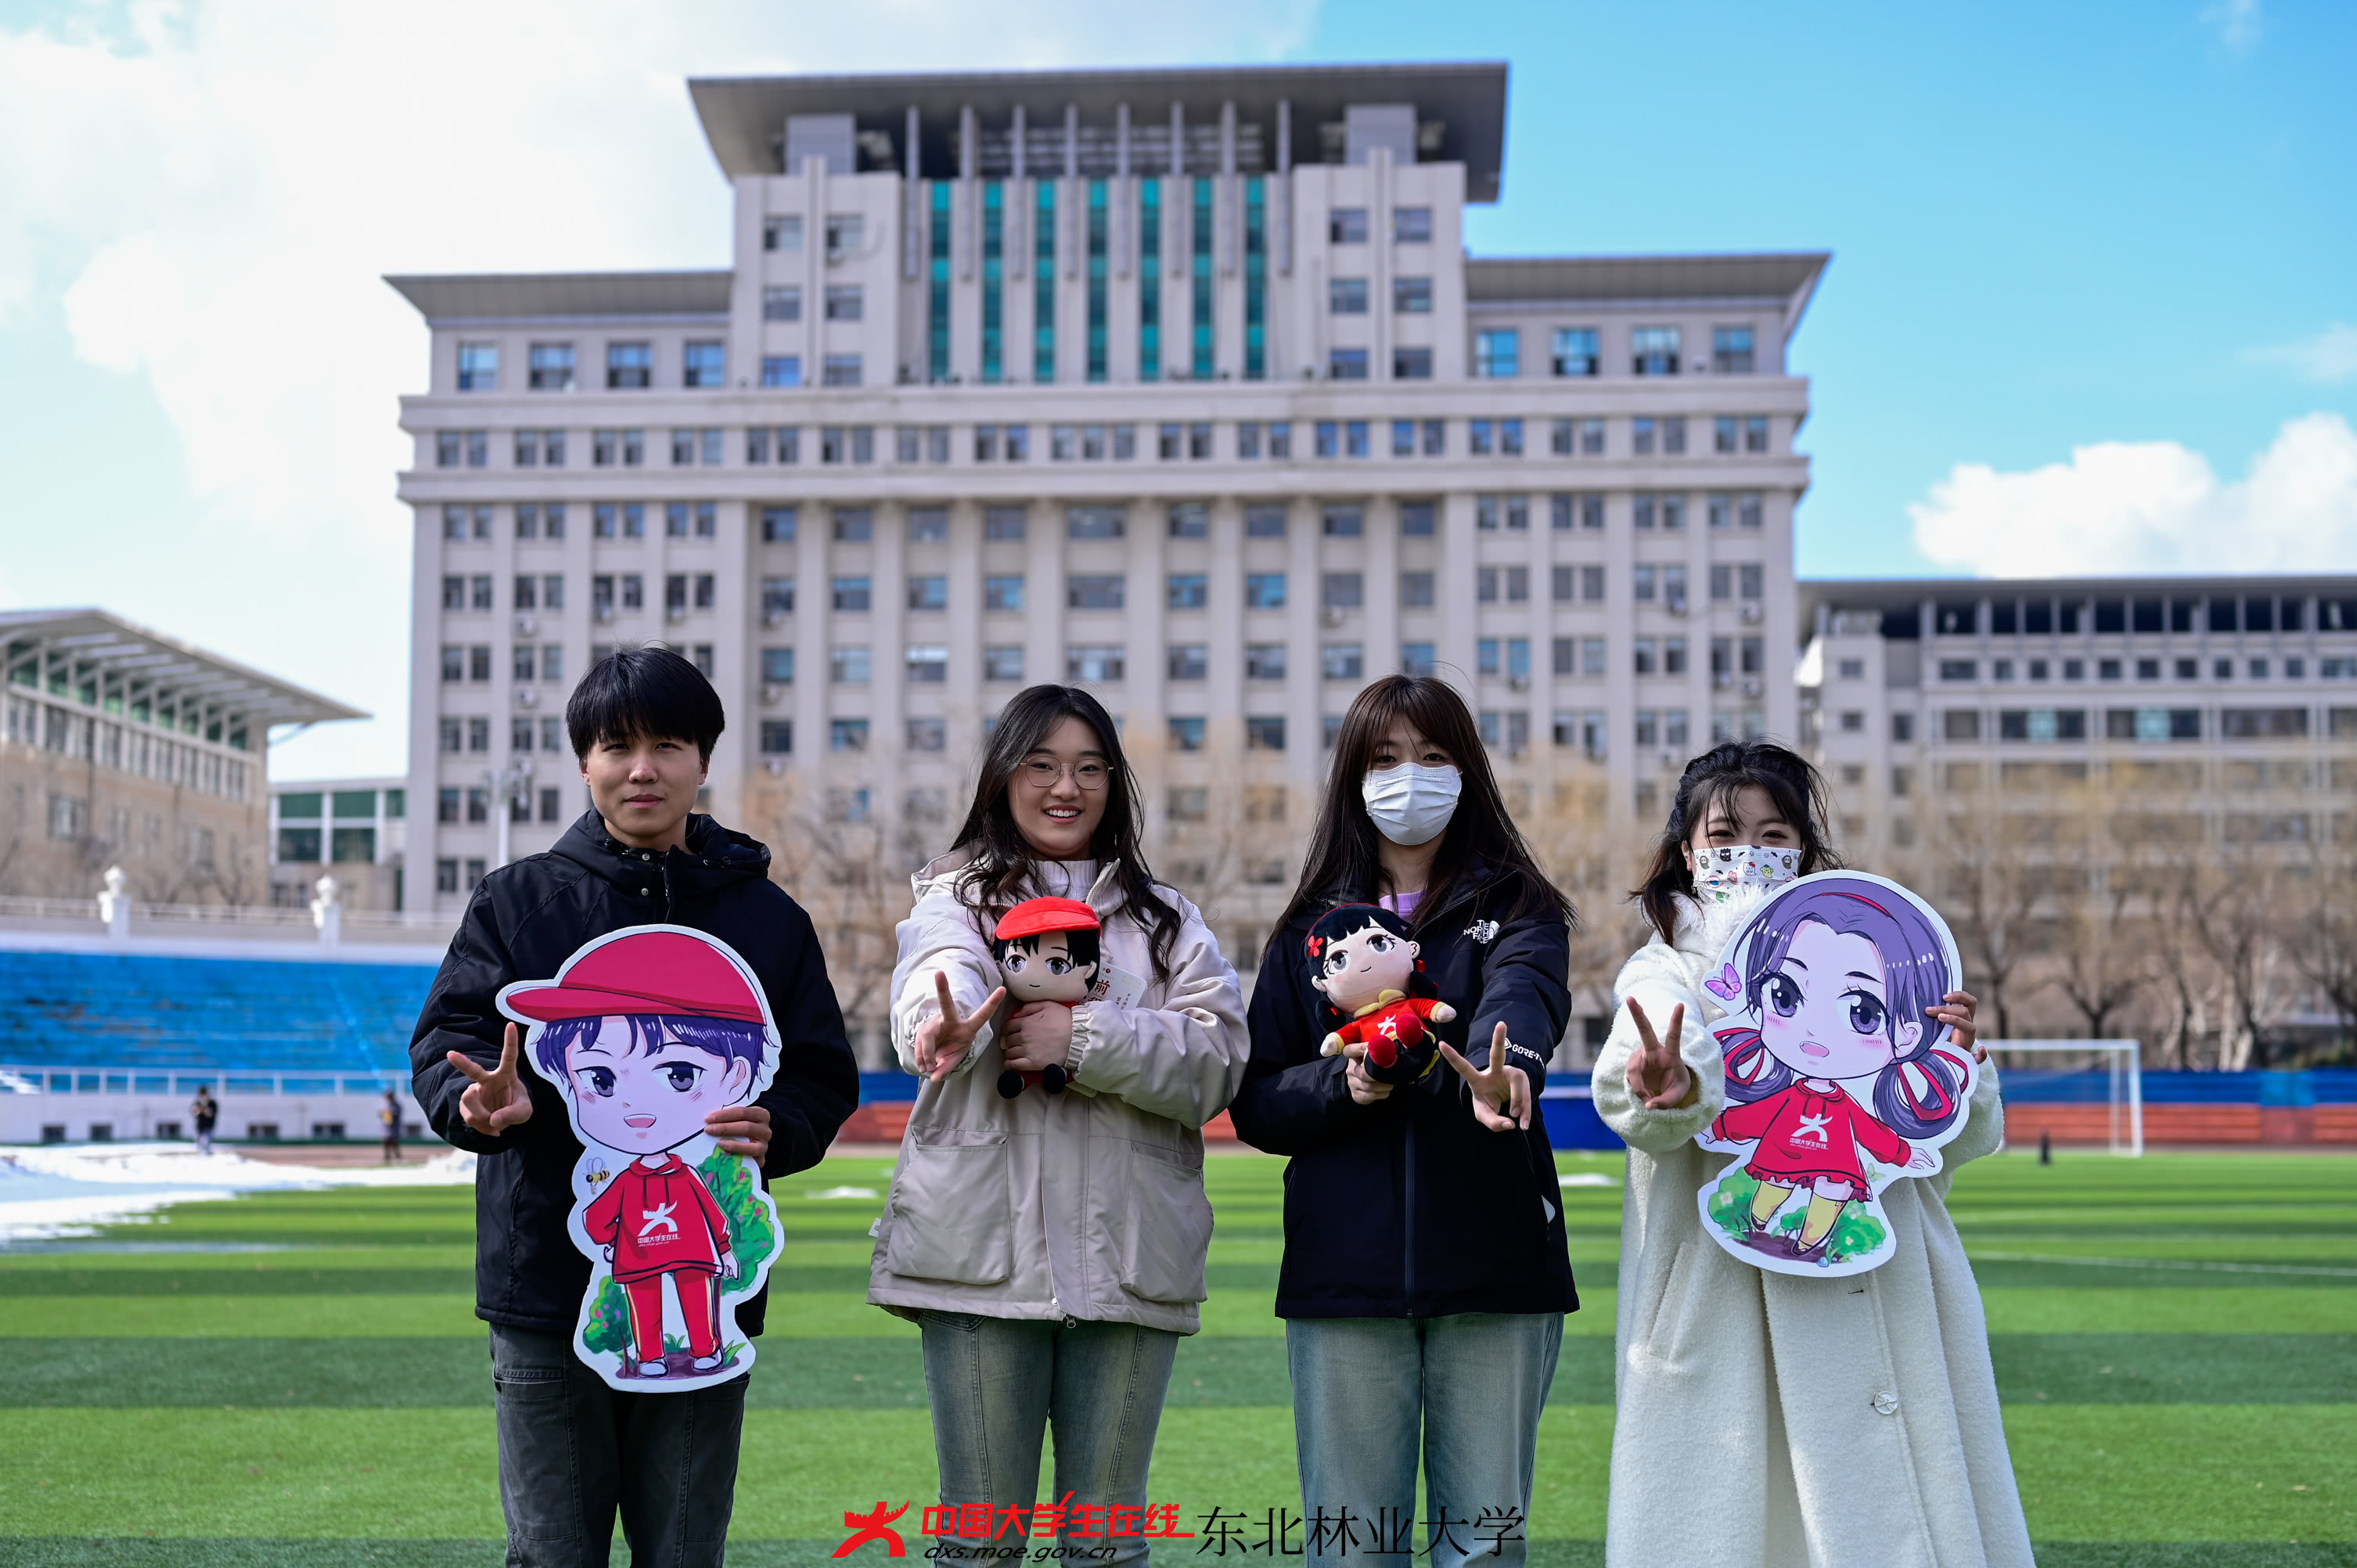 同学们在中国大学生在线小中兄妹的带领下，畅游校园，在田径场与小中兄妹进行集章打卡拍照。